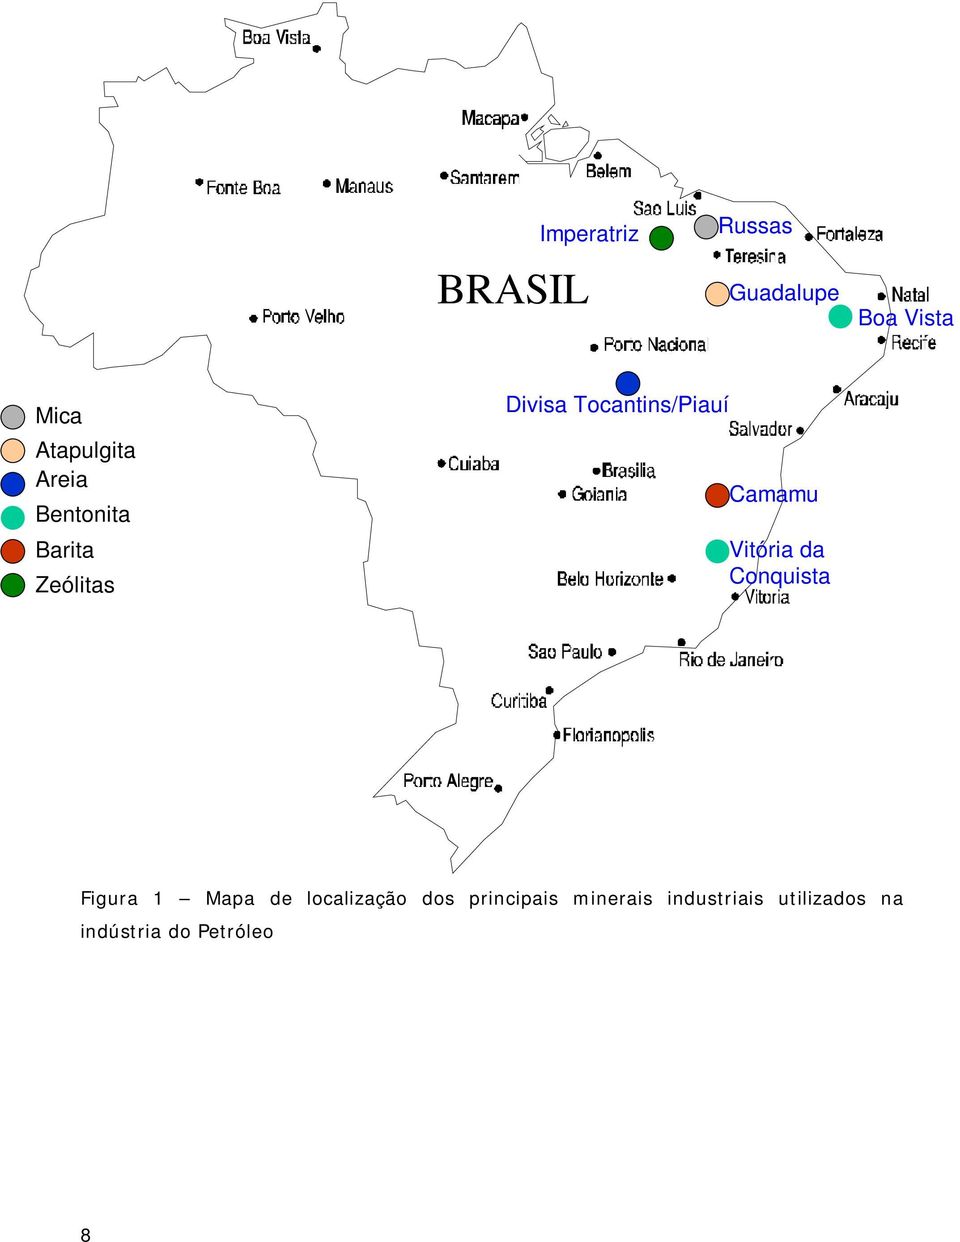 Vitória da Conquista Figura 1 Mapa de localização dos